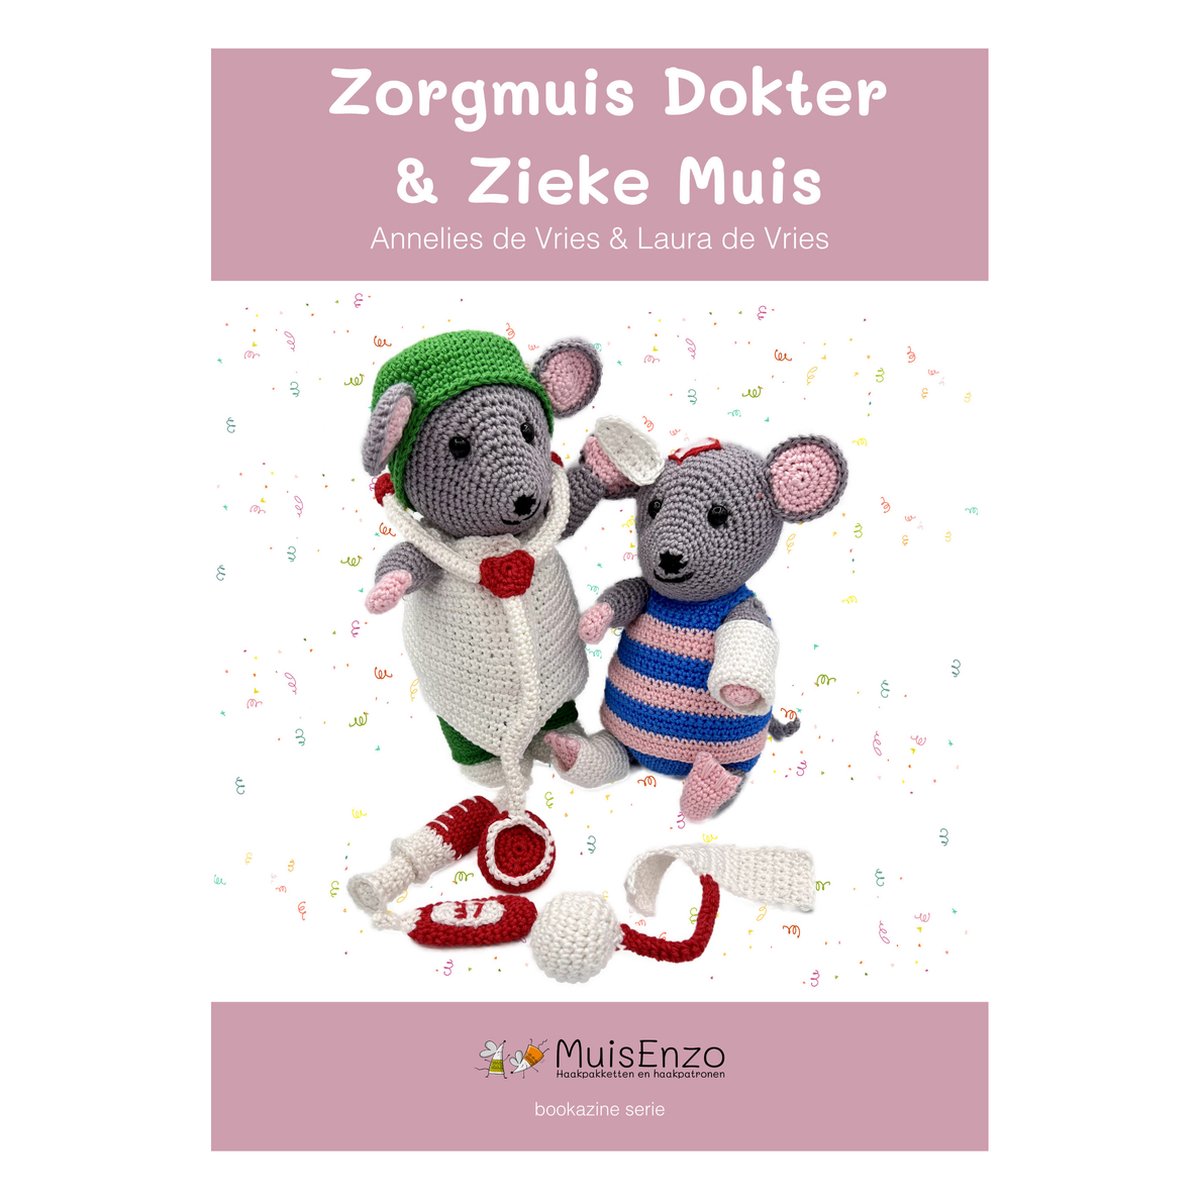 Mini-haakboek Zorgmuis Dokter & Zieke muis - Annelies de Vries